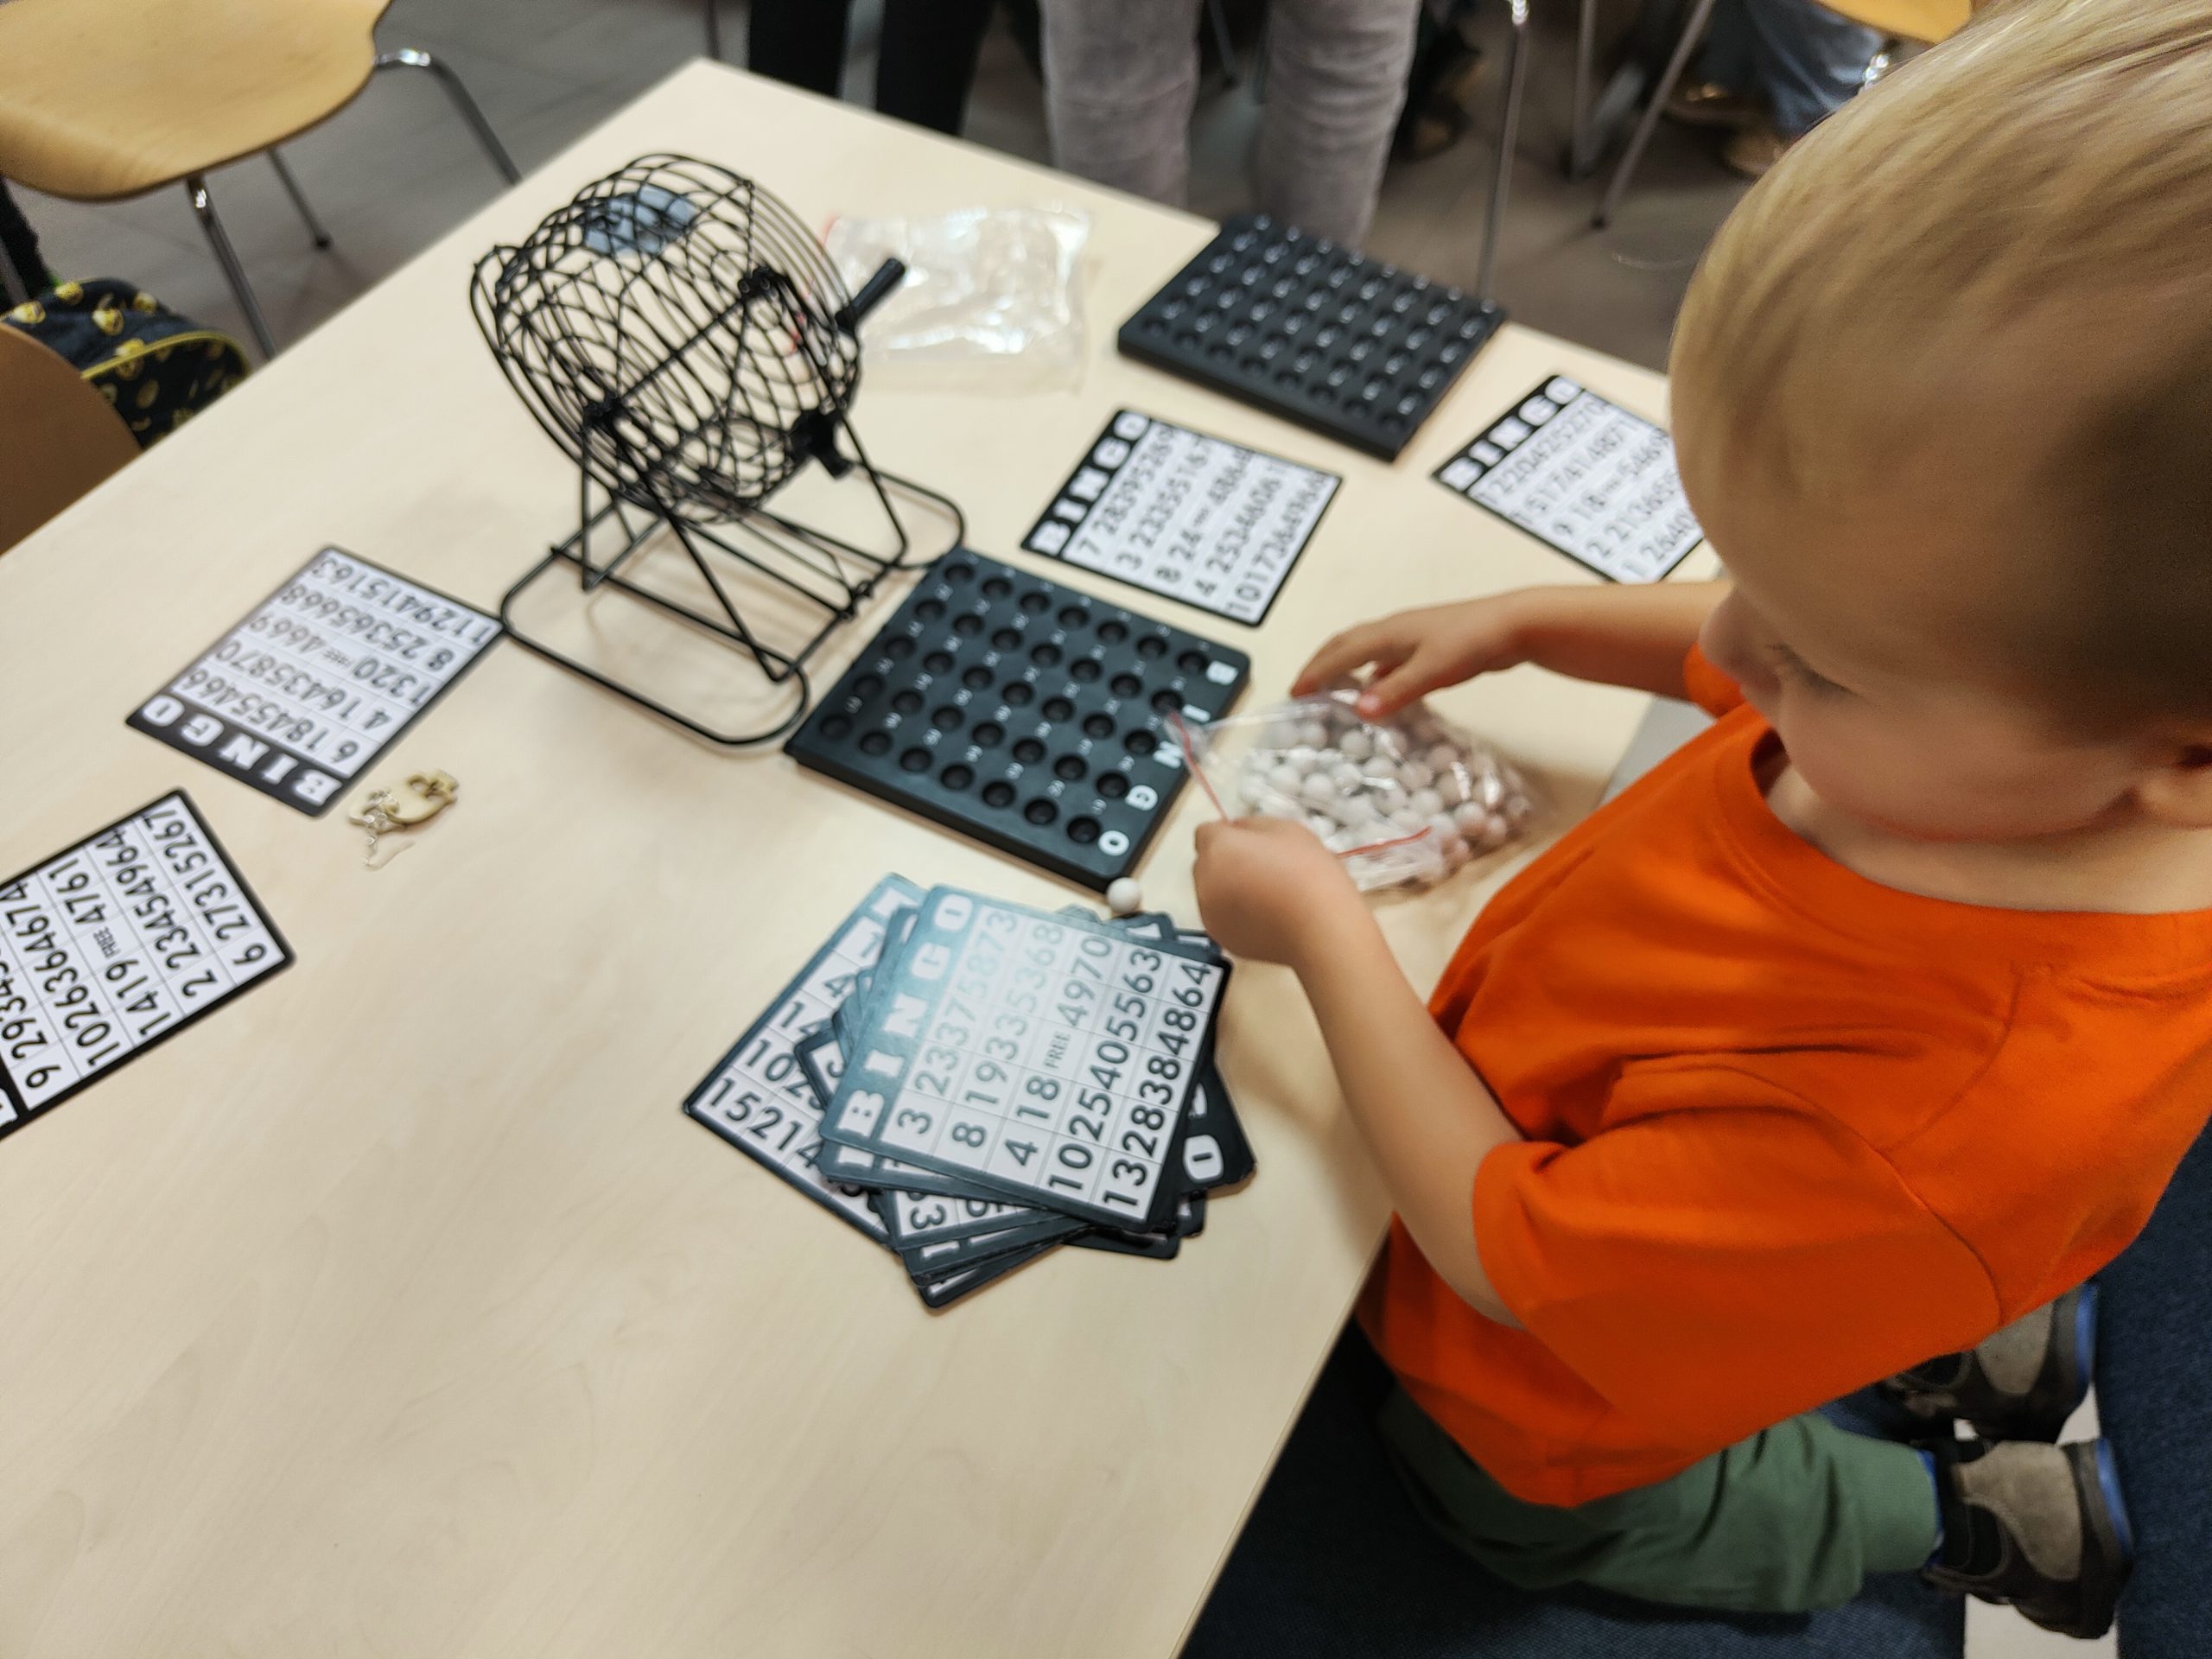 Dziecko układające na stole elementy gry w Bingo - karty, kulki i bębenek.